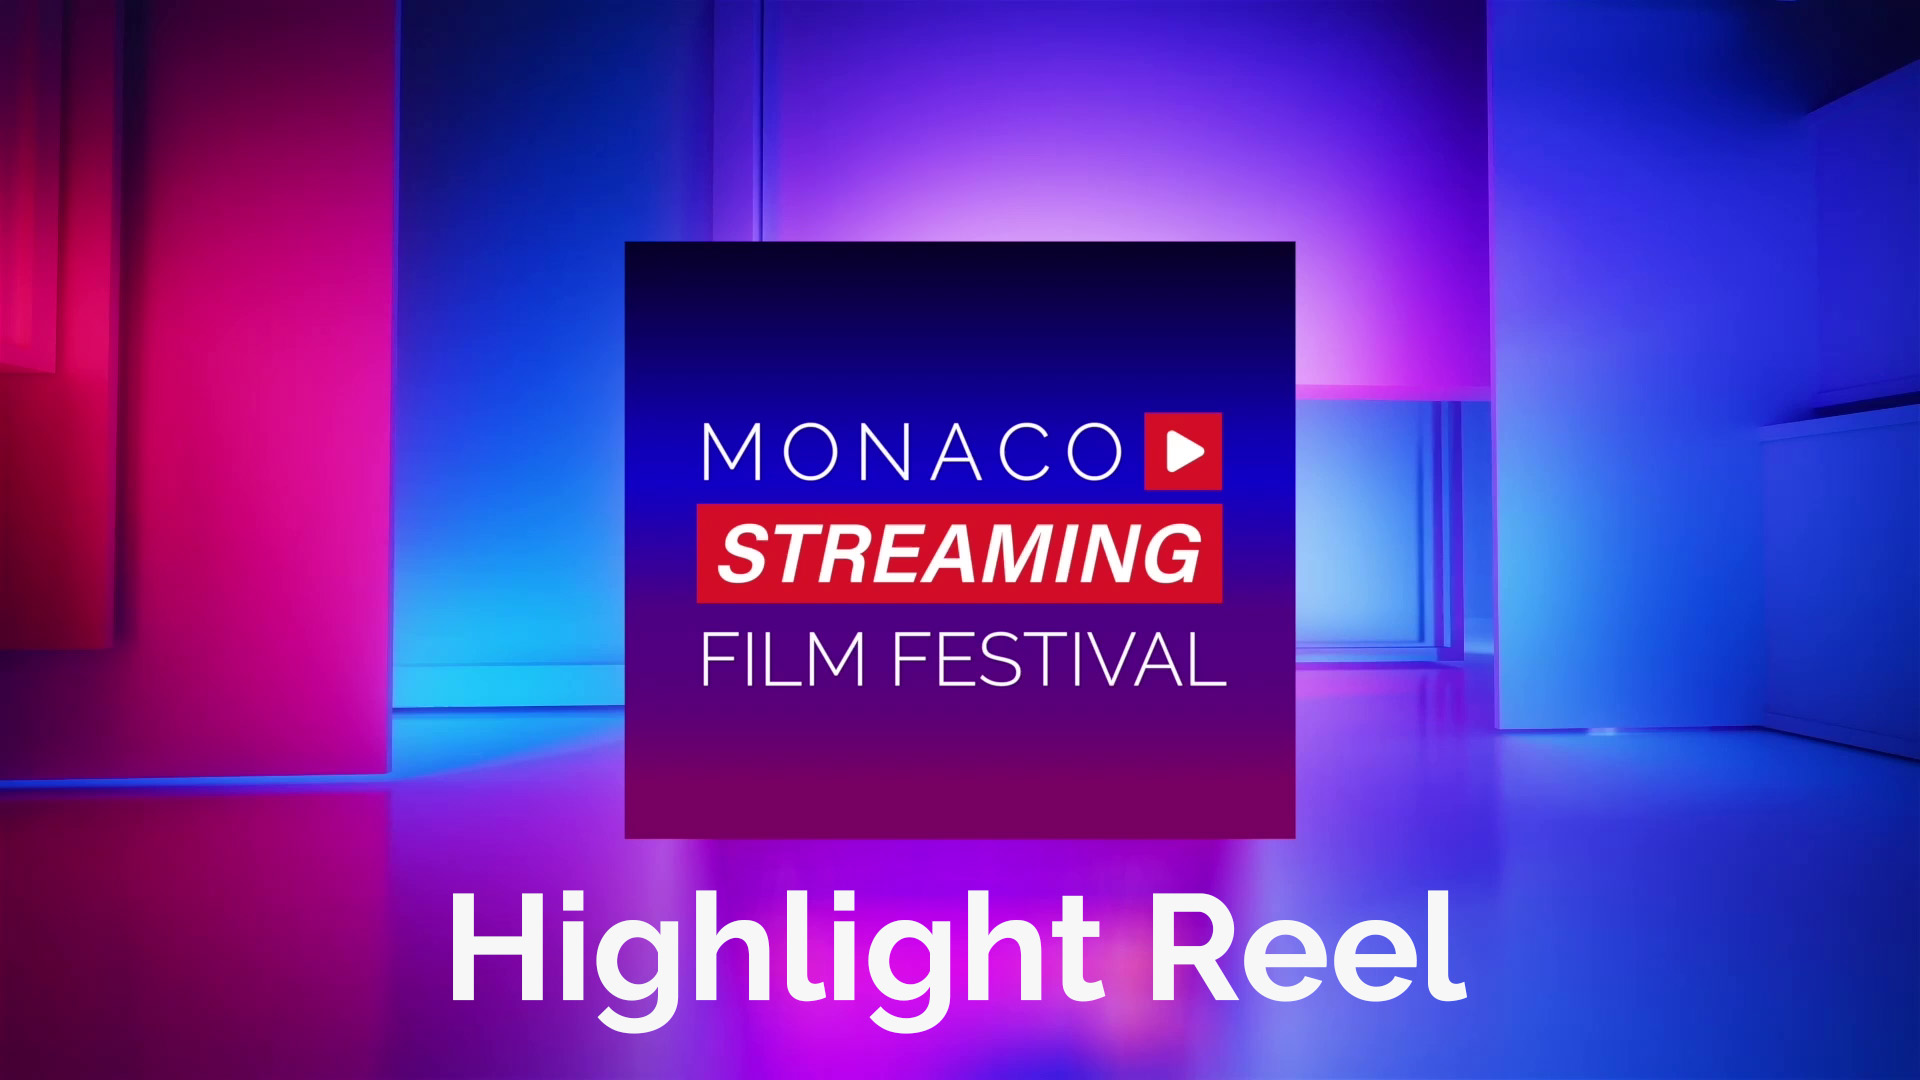 Monaco Streaming Film Festival 2022 Highlight Reel